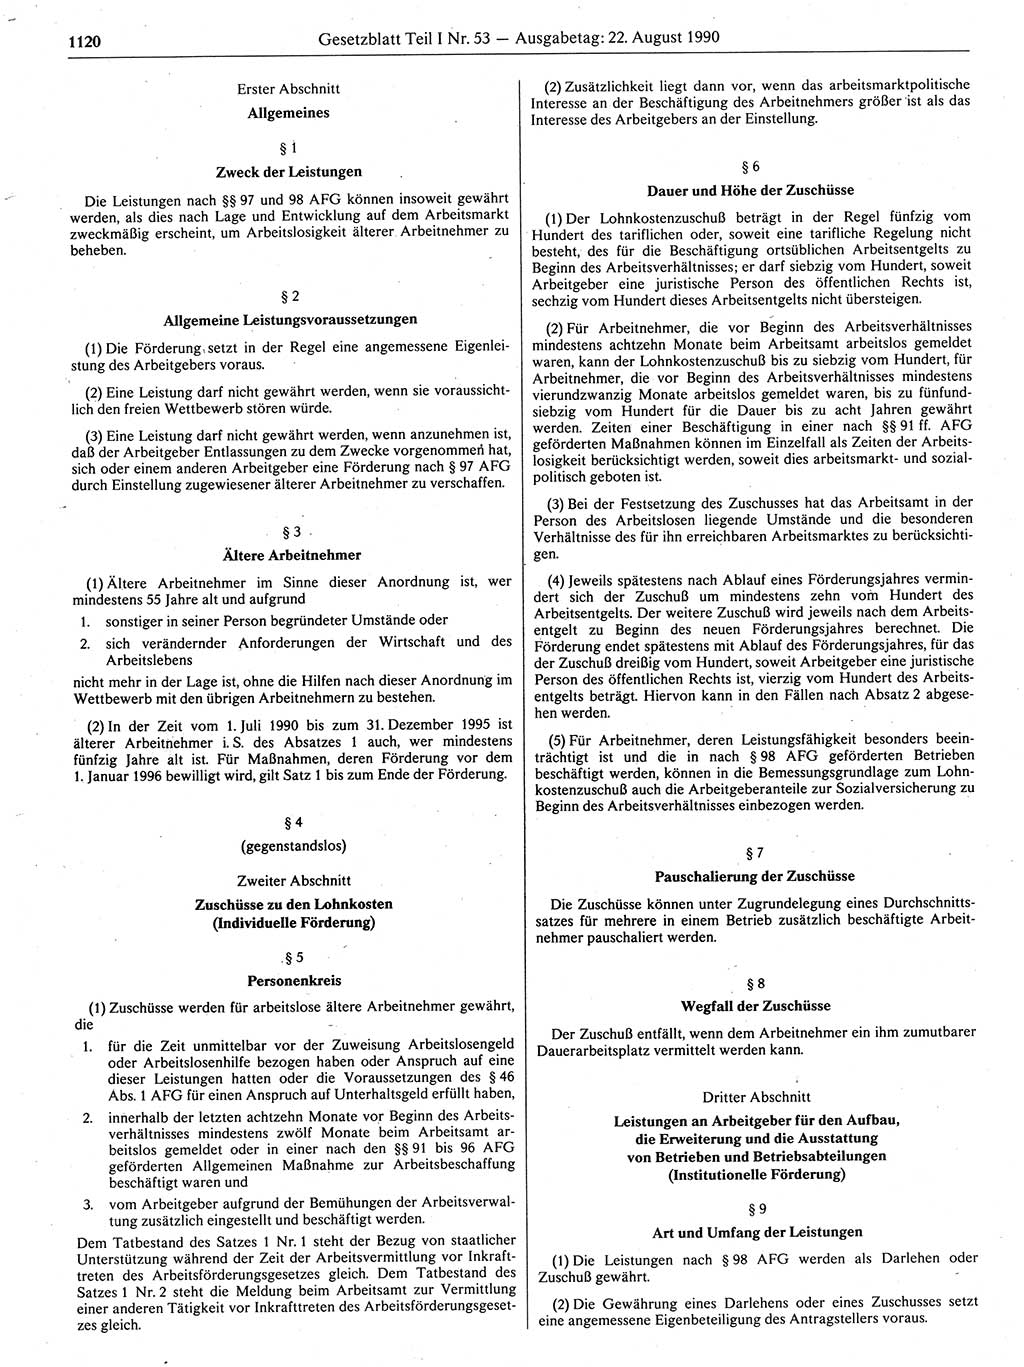 Gesetzblatt (GBl.) der Deutschen Demokratischen Republik (DDR) Teil Ⅰ 1990, Seite 1120 (GBl. DDR Ⅰ 1990, S. 1120)